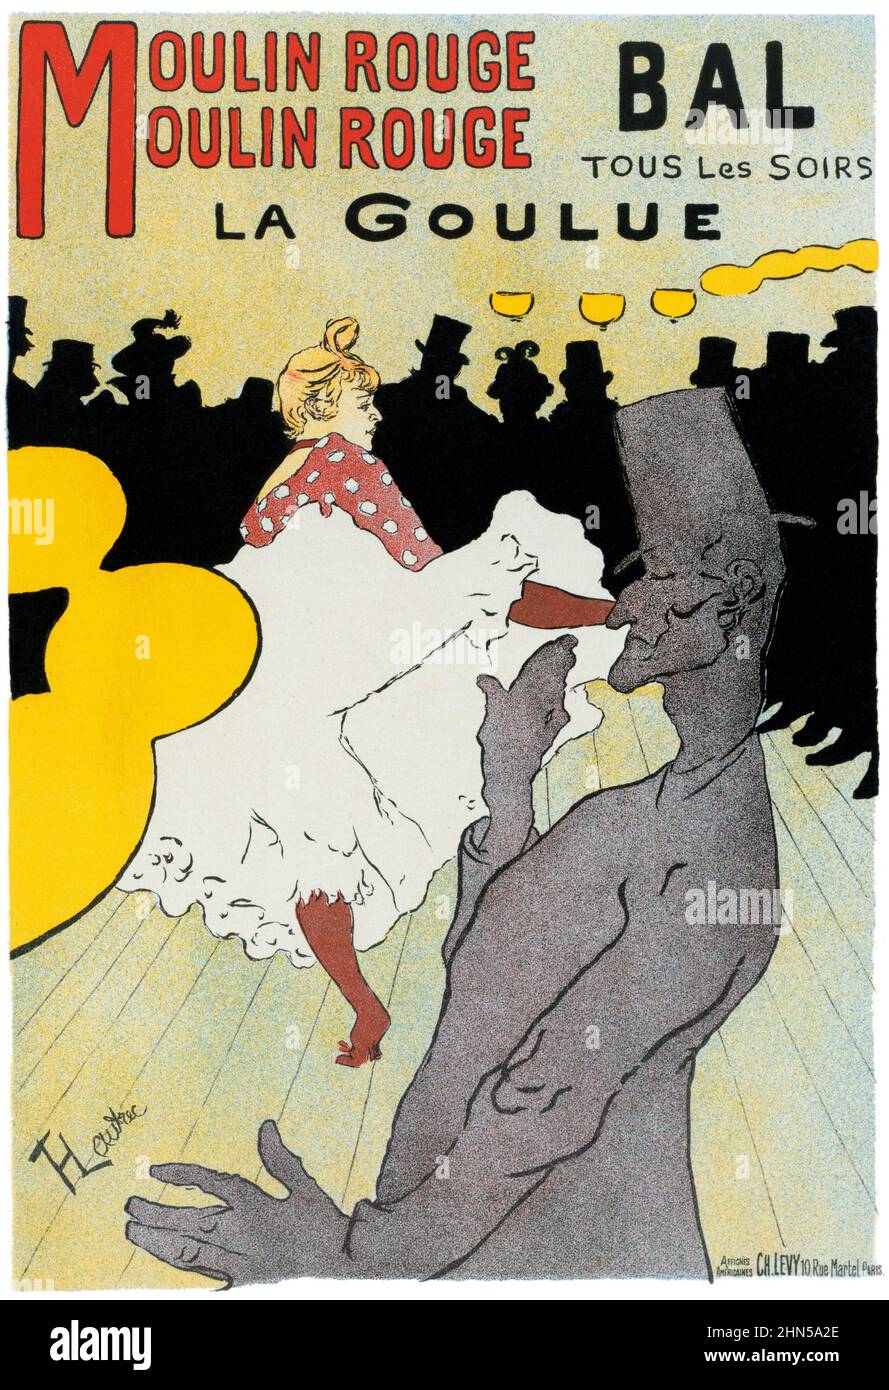 Antike Vintage-Kunst von Henri Toulouse-Lautrec. Moulin Rouge: La Goulue. 1891. Dieses ist in sehr gutem Zustand. Etwas verbessert. Stockfoto